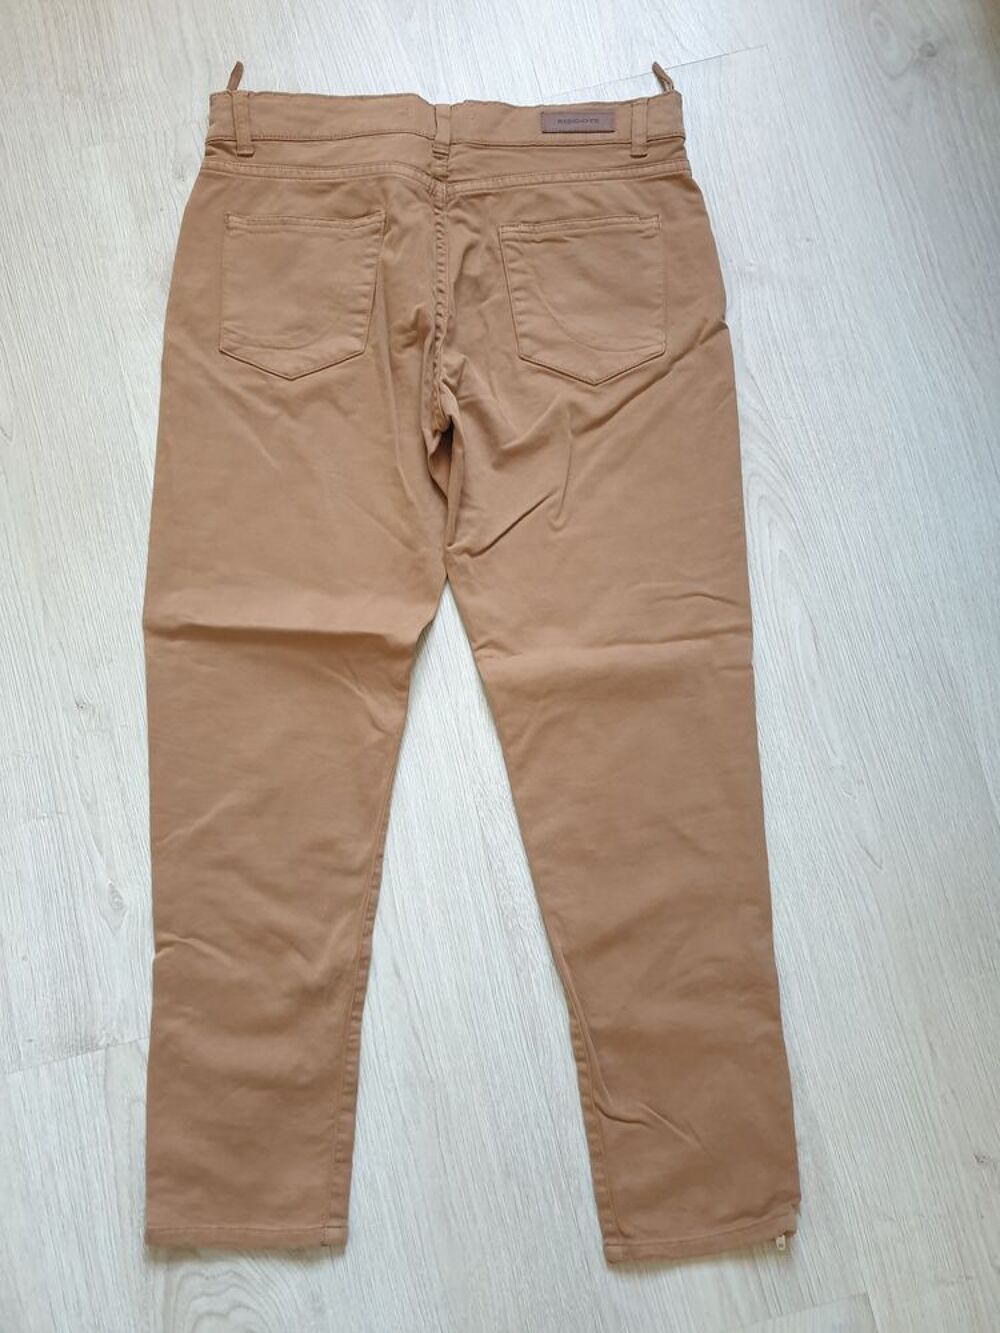 Pantalon Jean Biscote marron clair taille 40 Vtements